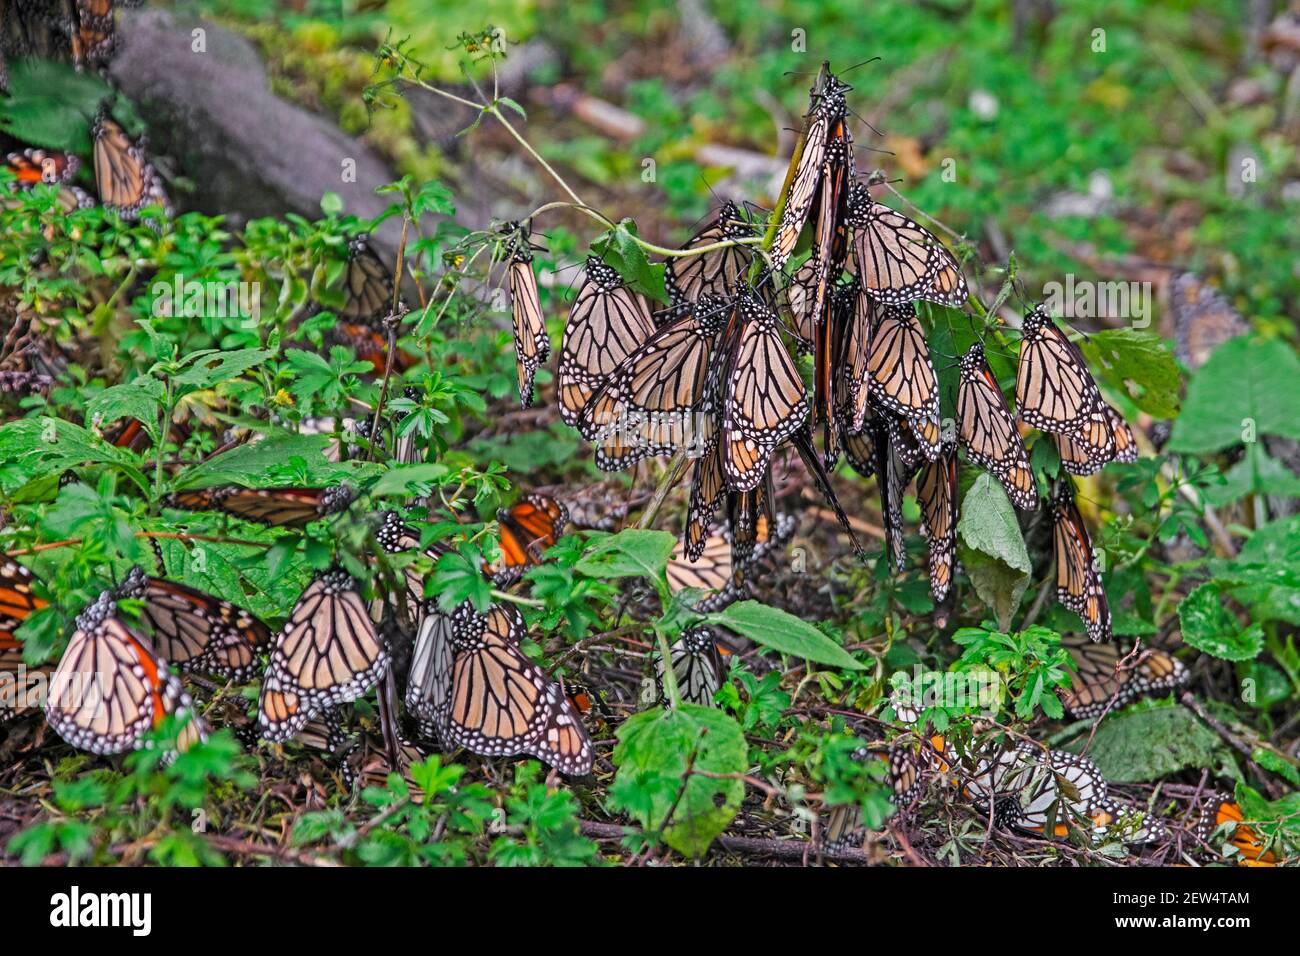 Monarques / papillons monarques (Danaus plexippus) hivernant dans la réserve de biosphère des papillons monarques près d'Angangueo, Michoacán, Mexique Banque D'Images